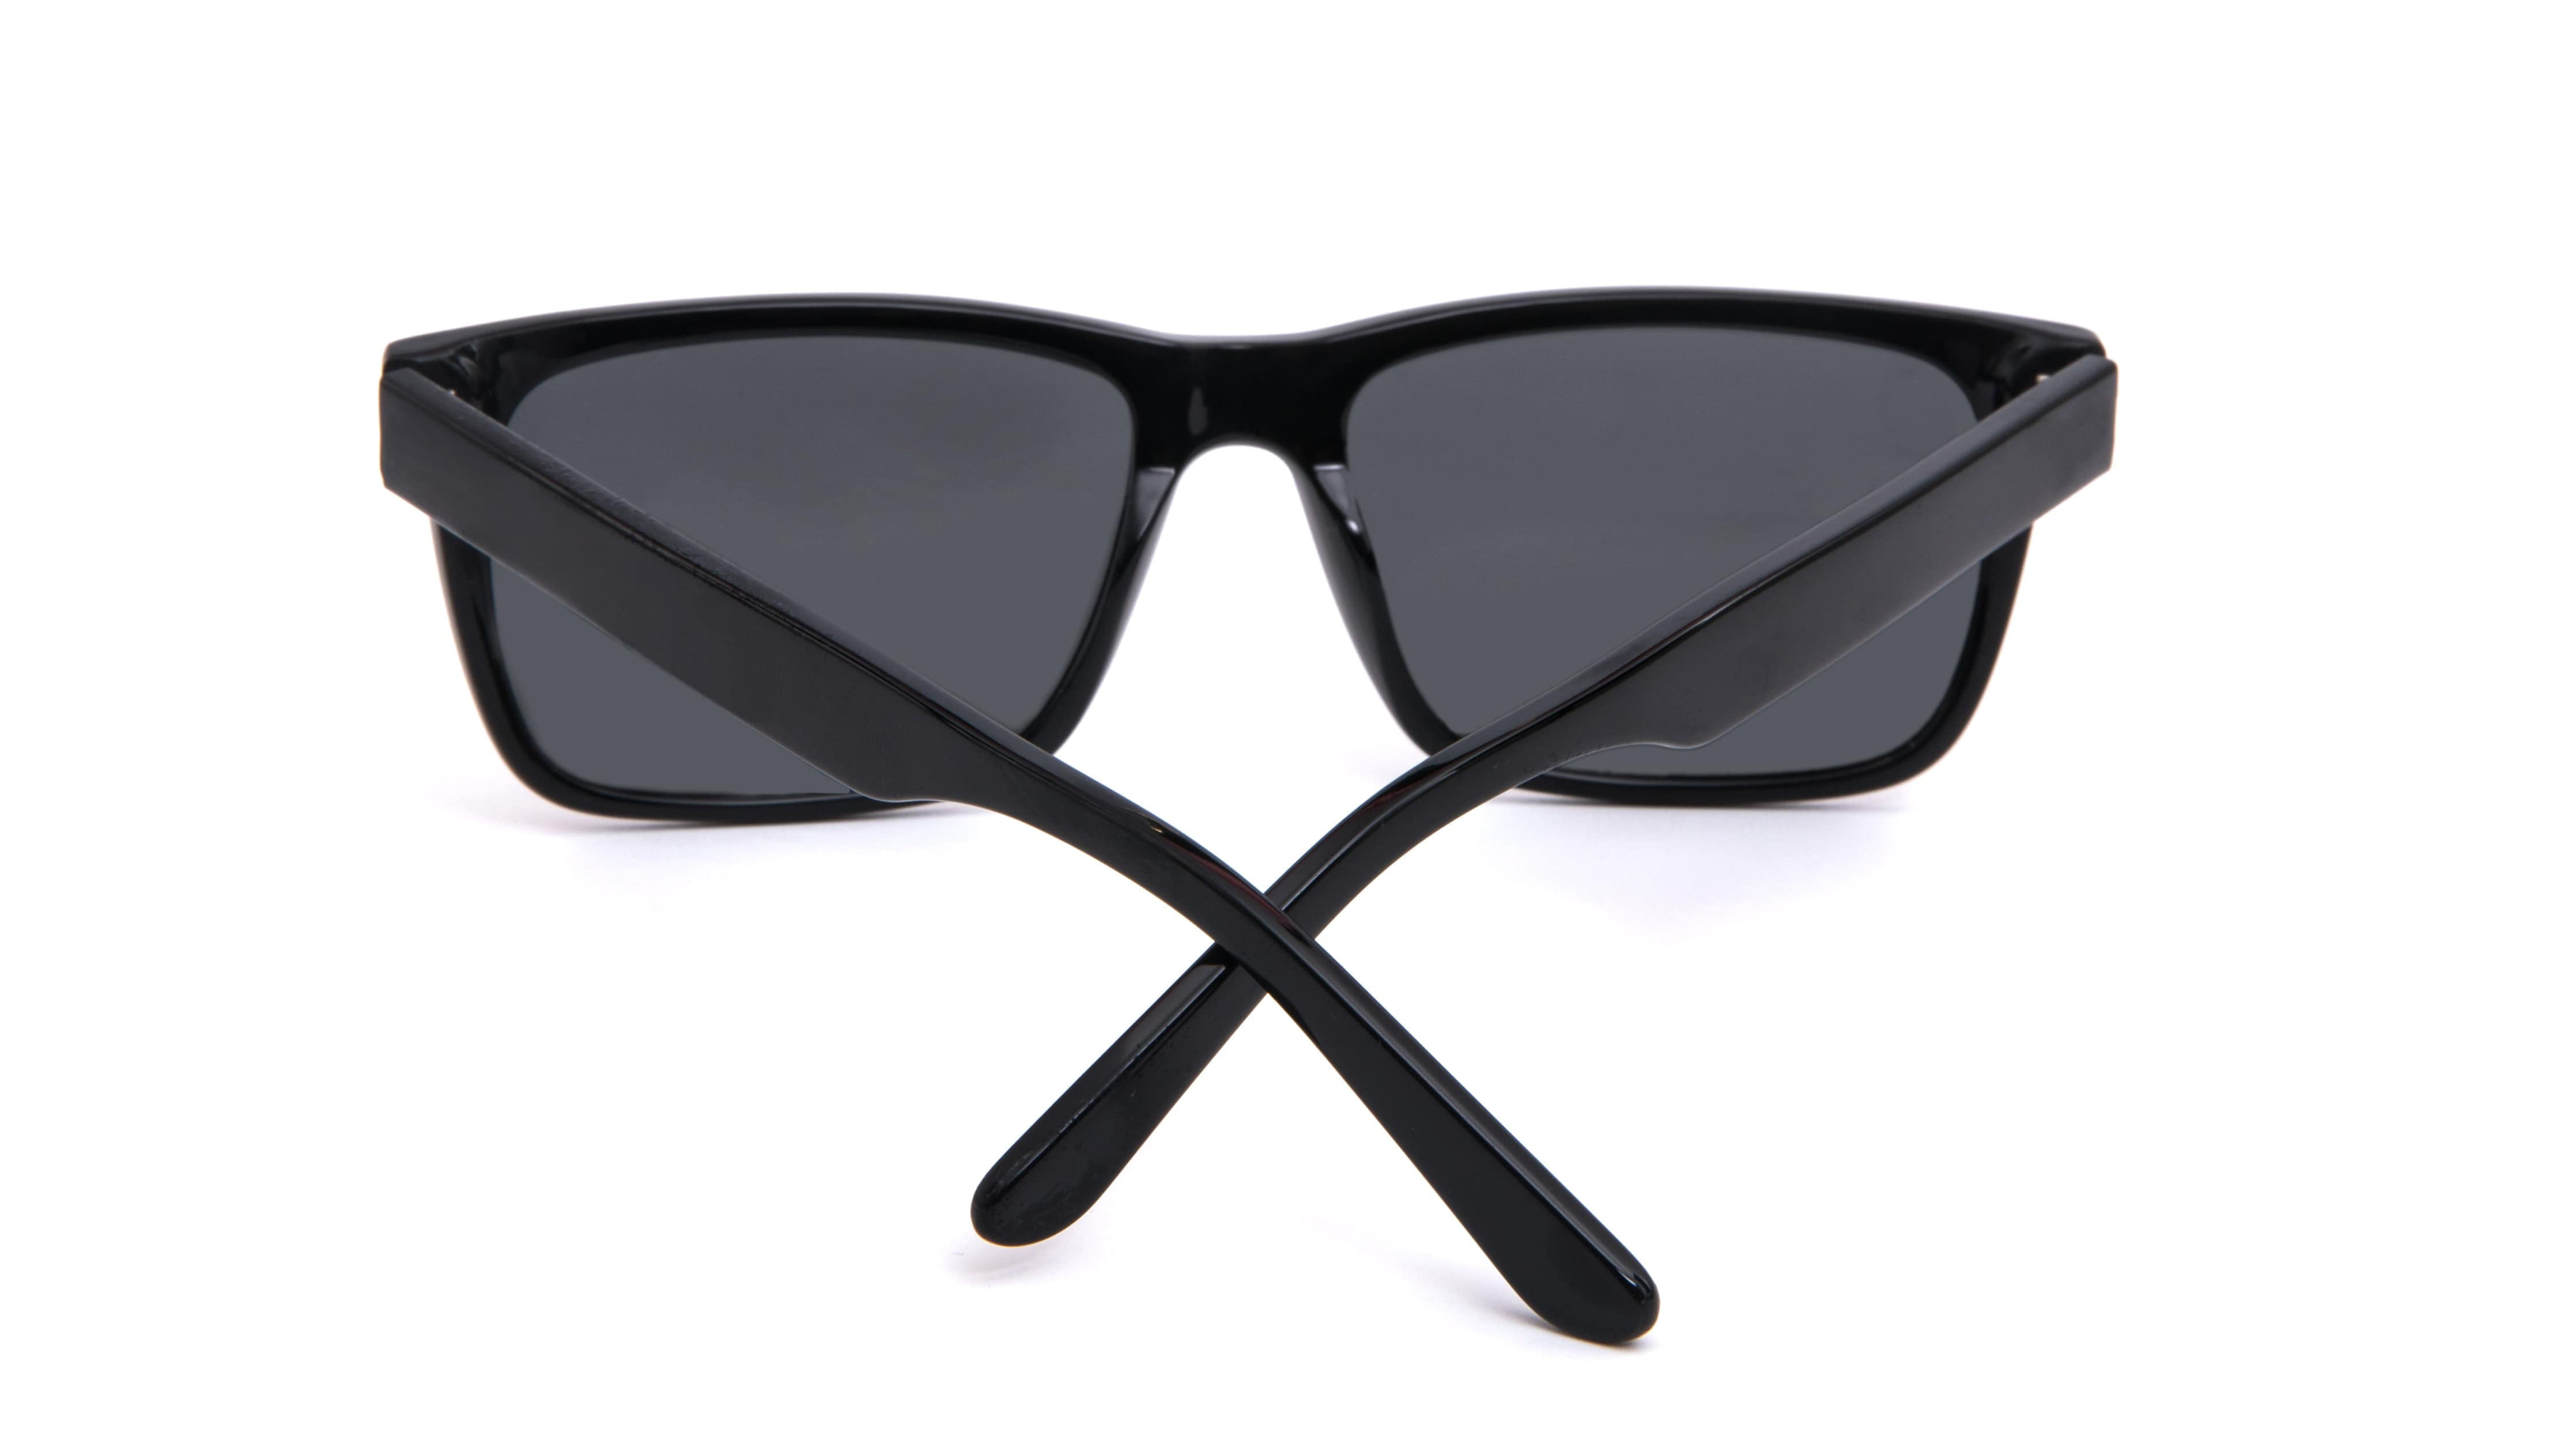 RYLEE Retro Square Sunglasses